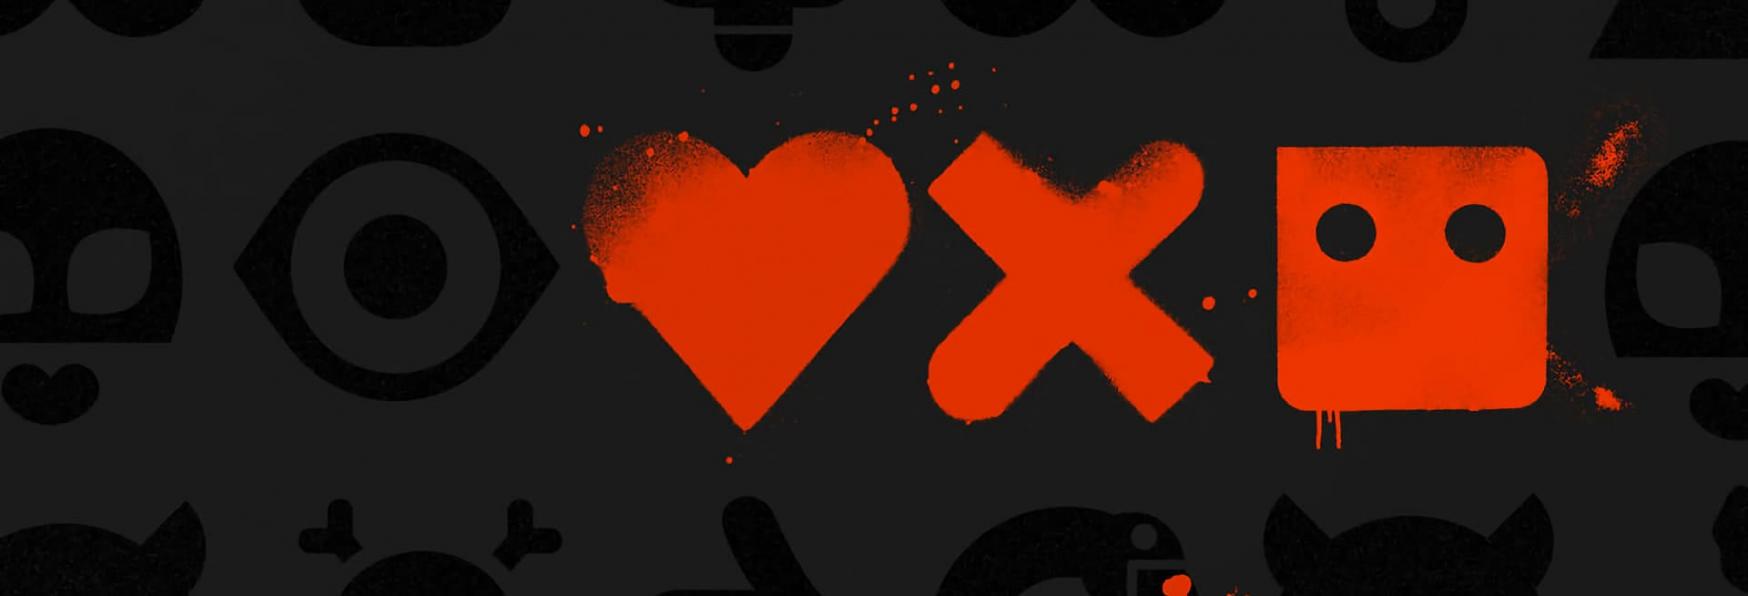 Love, Death & Robots 3: Netflix condivide il Full Trailer del nuovo Volume